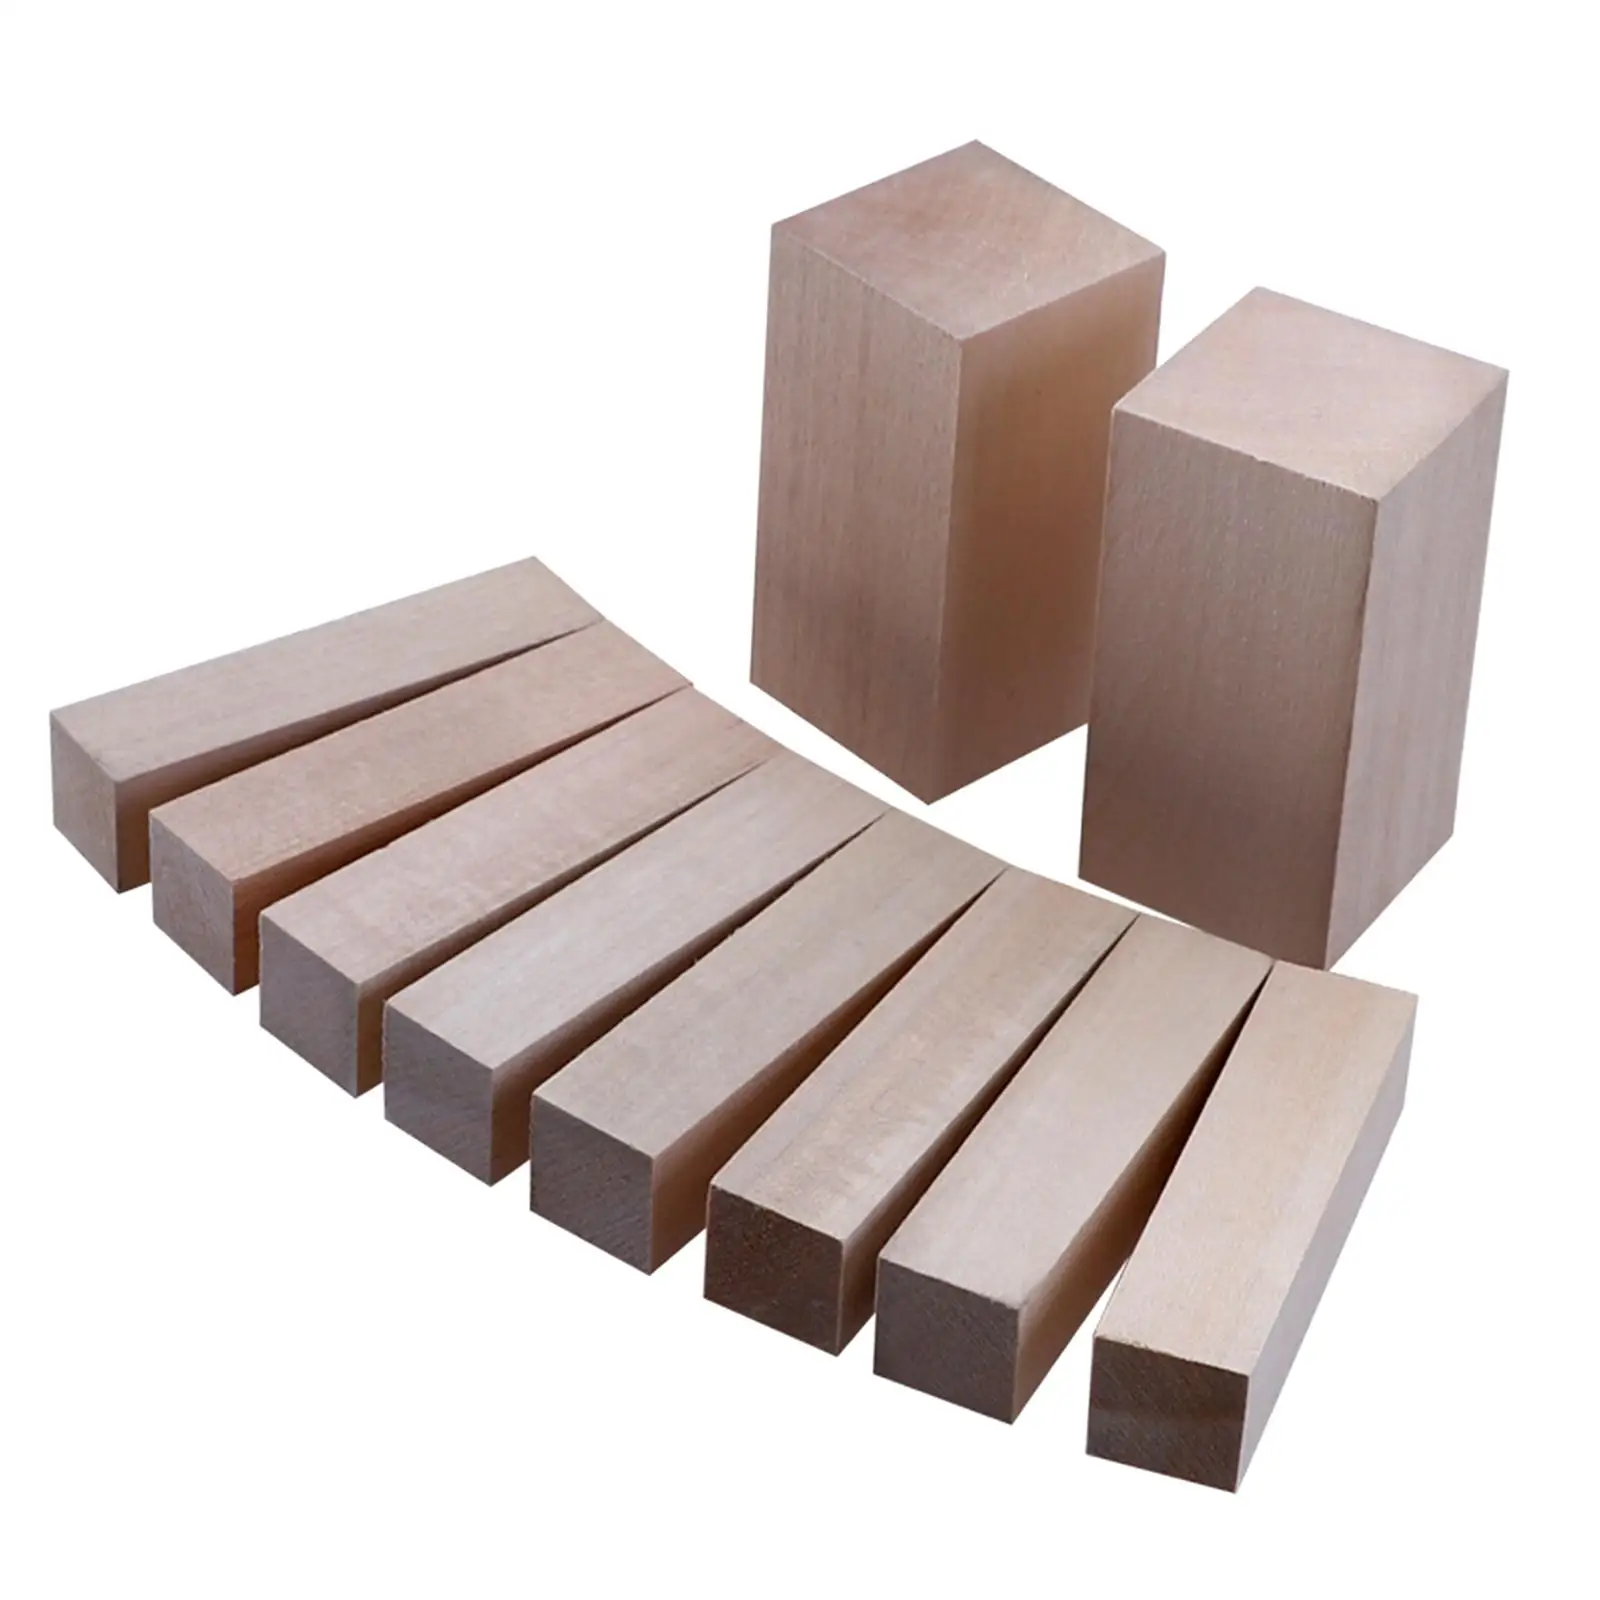 Blocco per intaglio del legno Kit di blocchi per intaglio del